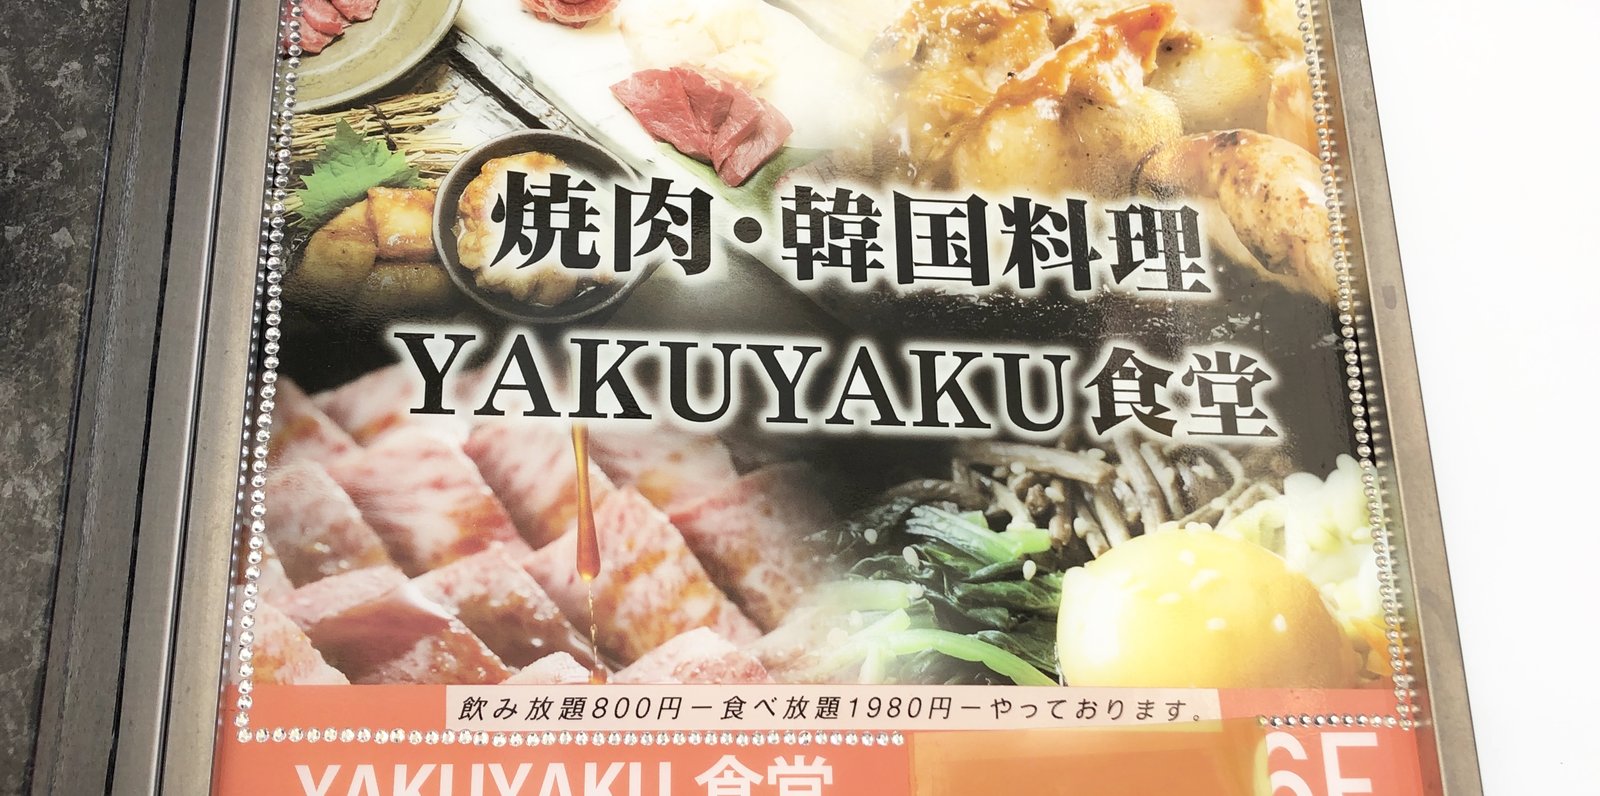 遂にタピオカ食べ放題 りょうくんグルメ監修 新宿yakuyaku で何タピ出来るか挑戦 Playlife プレイライフ